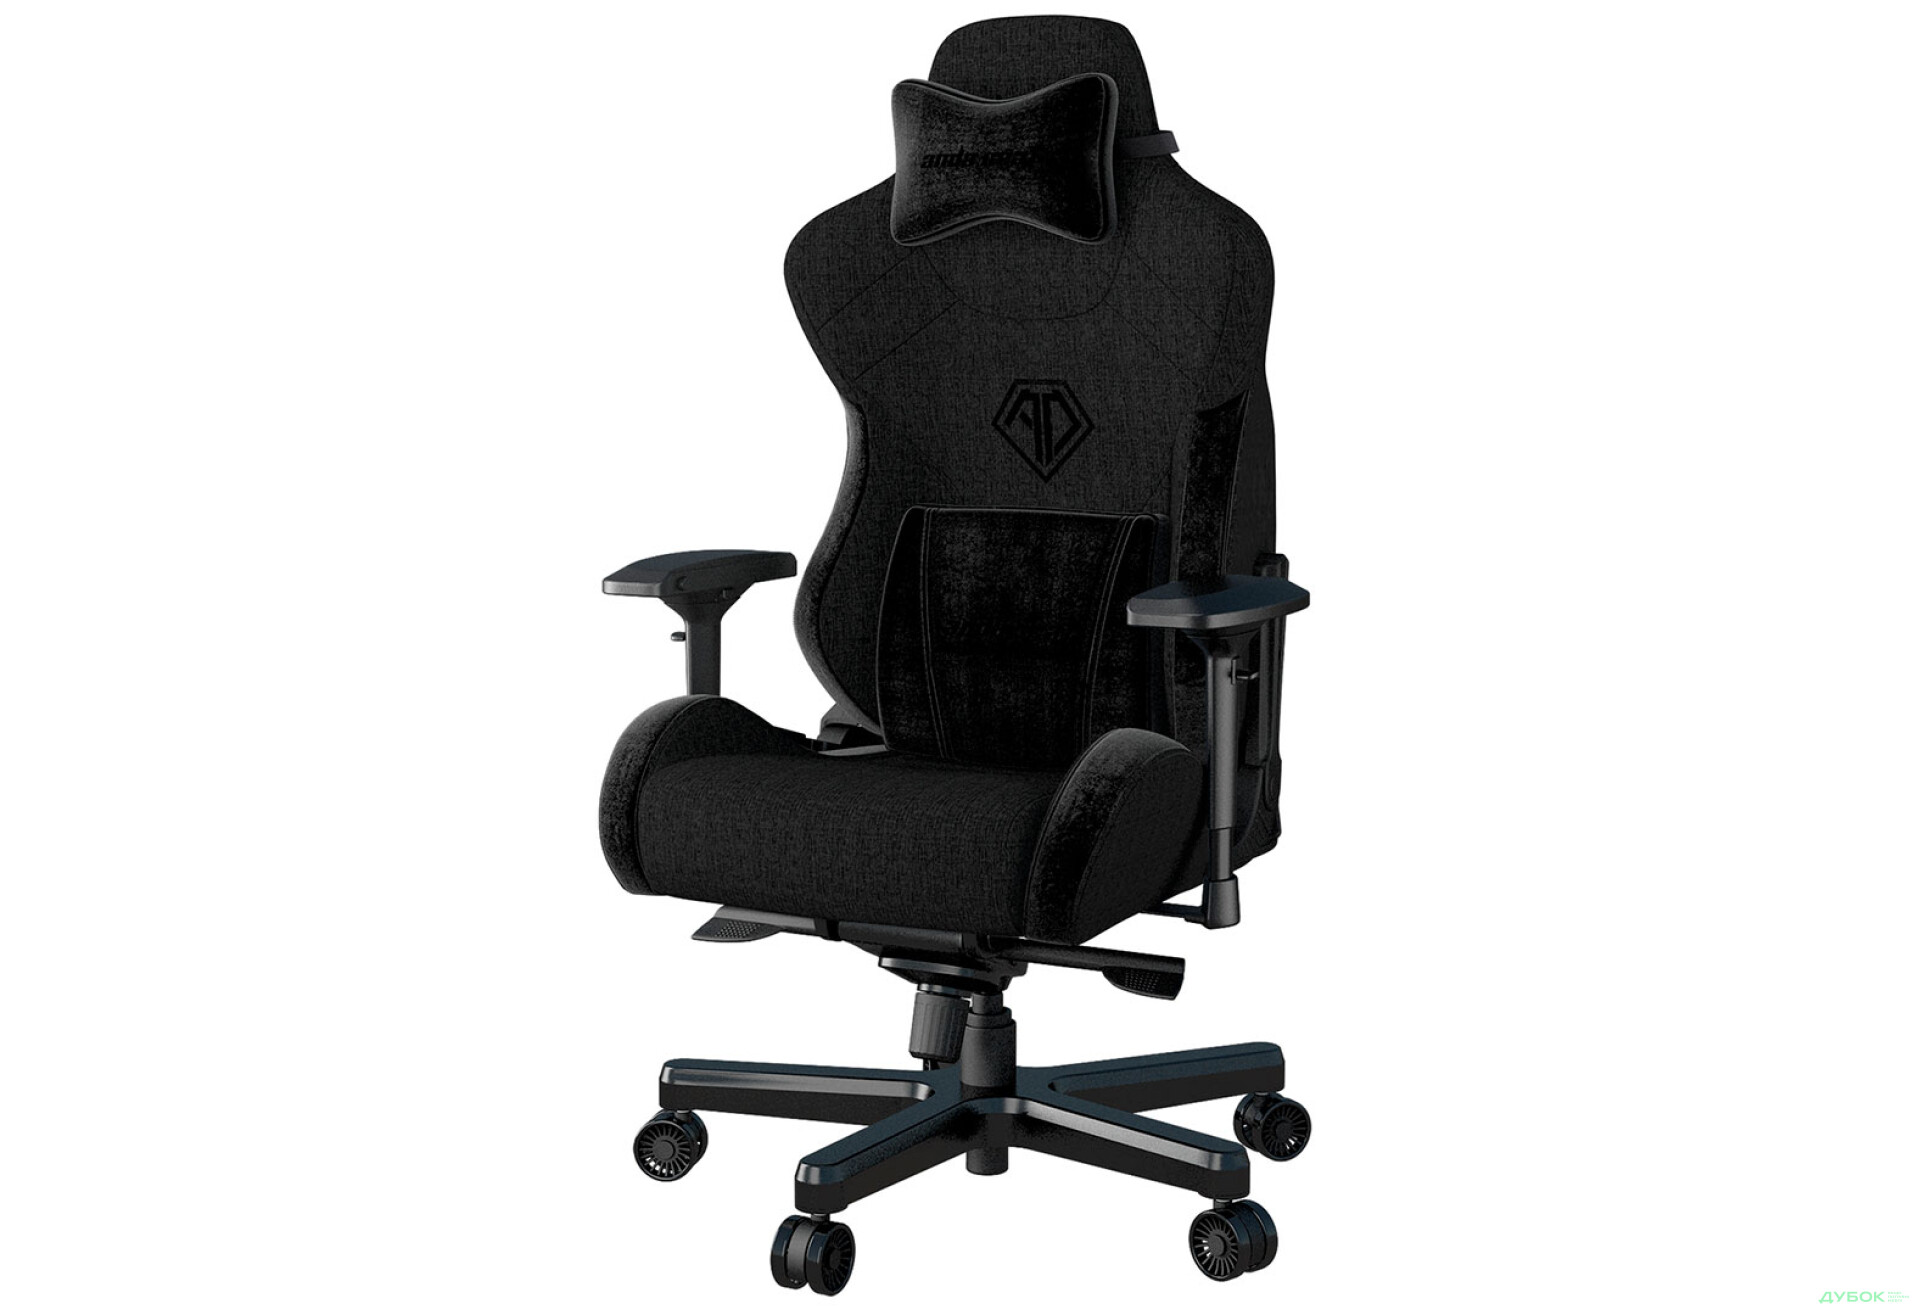 Фото 2 - Компьютерное кресло Anda Seat T-Pro 2 65x54x143 см игровое, черное